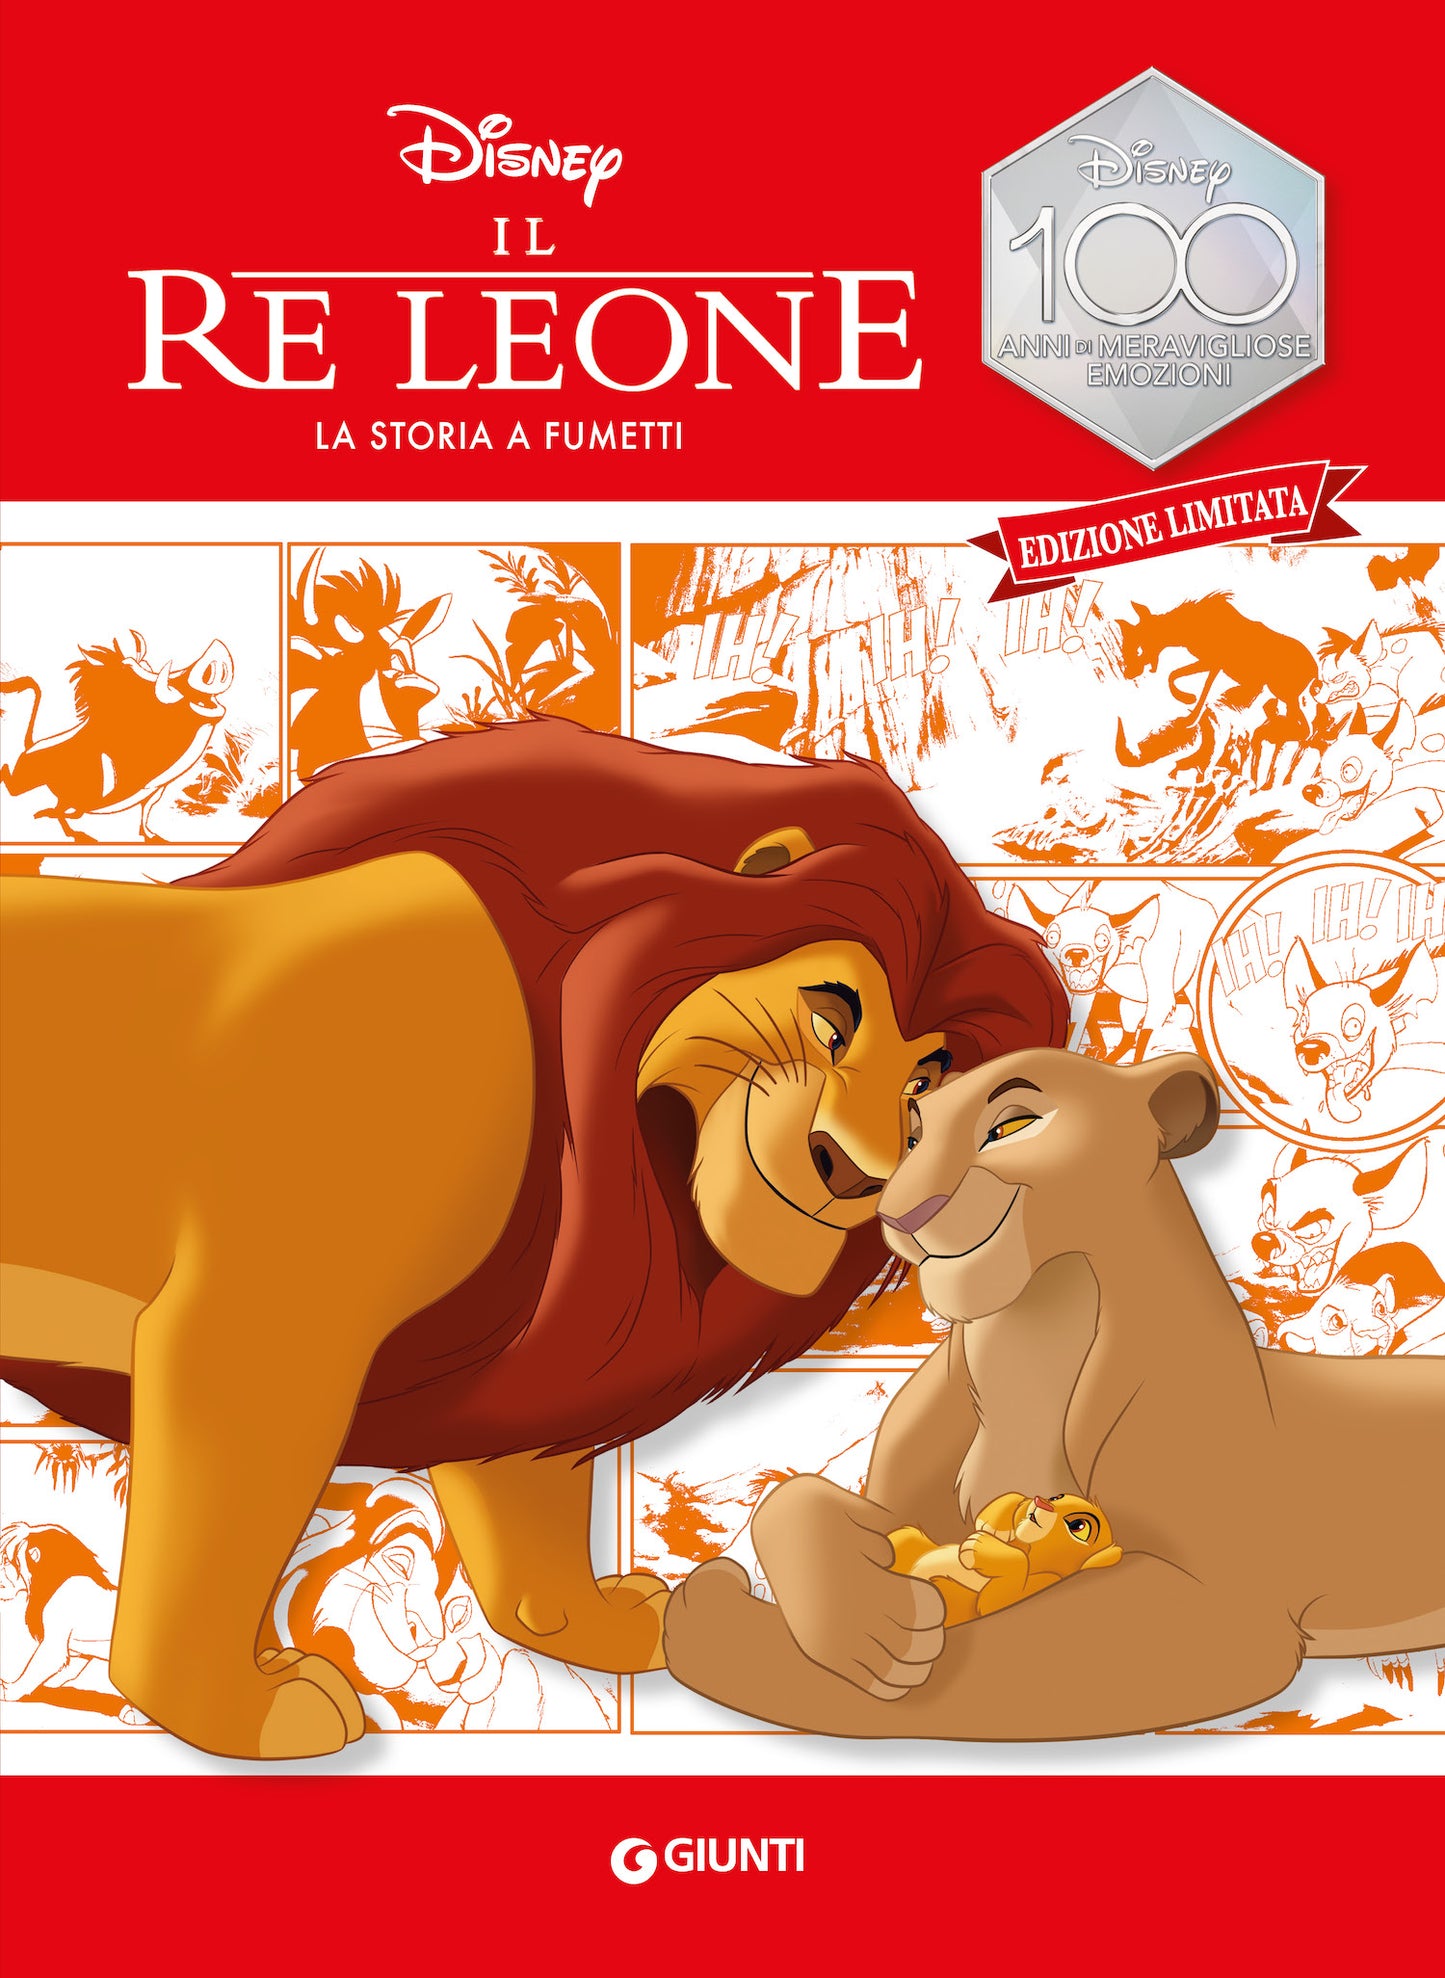 Il Re Leone La storia a fumetti Edizione limitata. Disney 100 Anni di meravigliose emozioni